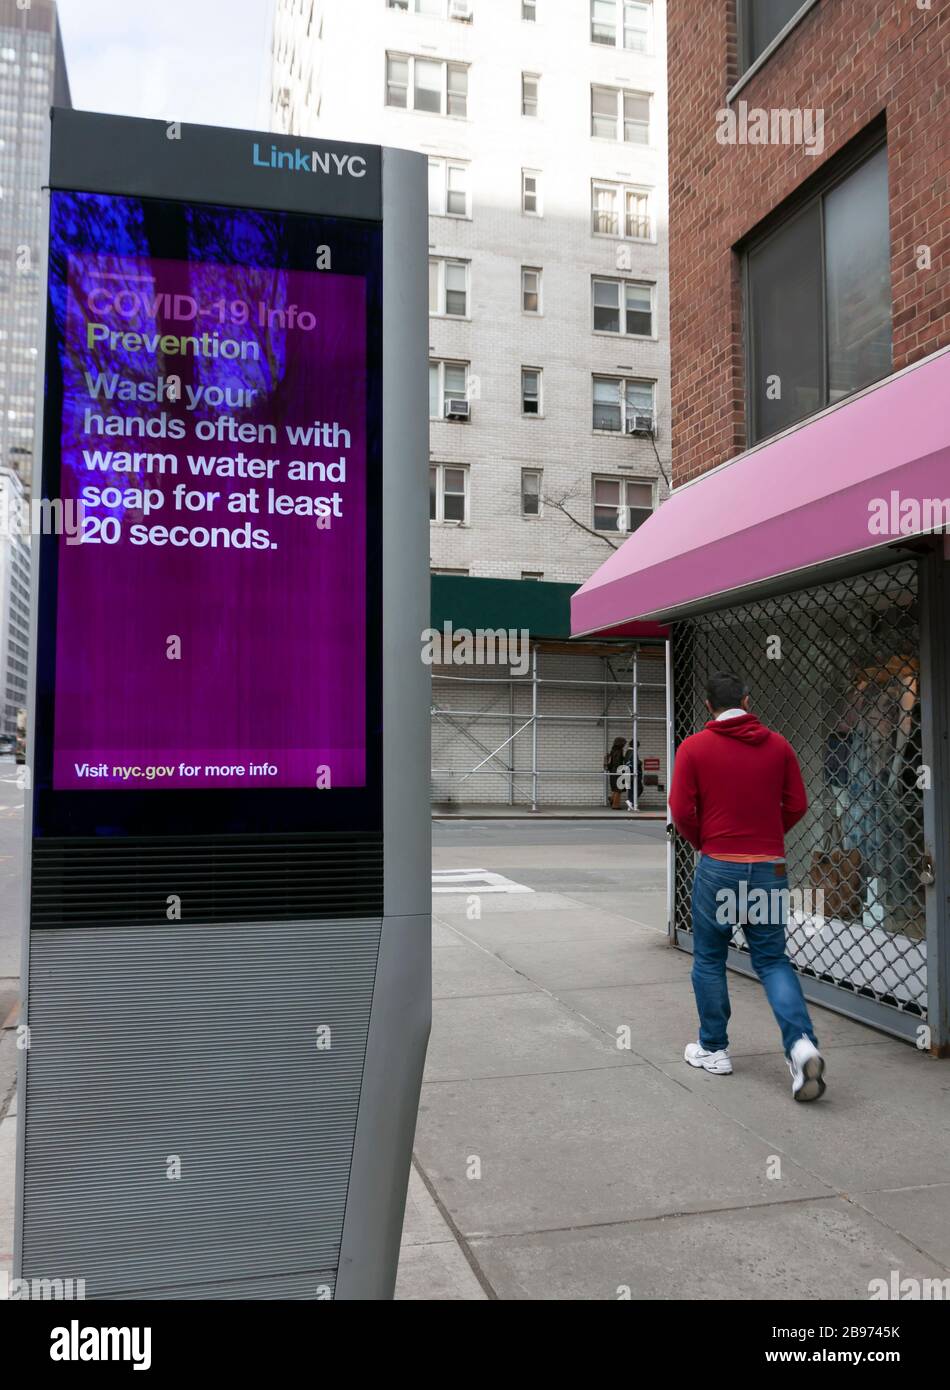 El kiosco digital LinkNYC muestra en la acera consejos de prevención de Covid-19 (coronavirus) y consejos sobre el lavado de manos a los neoyorquinos. Foto de stock